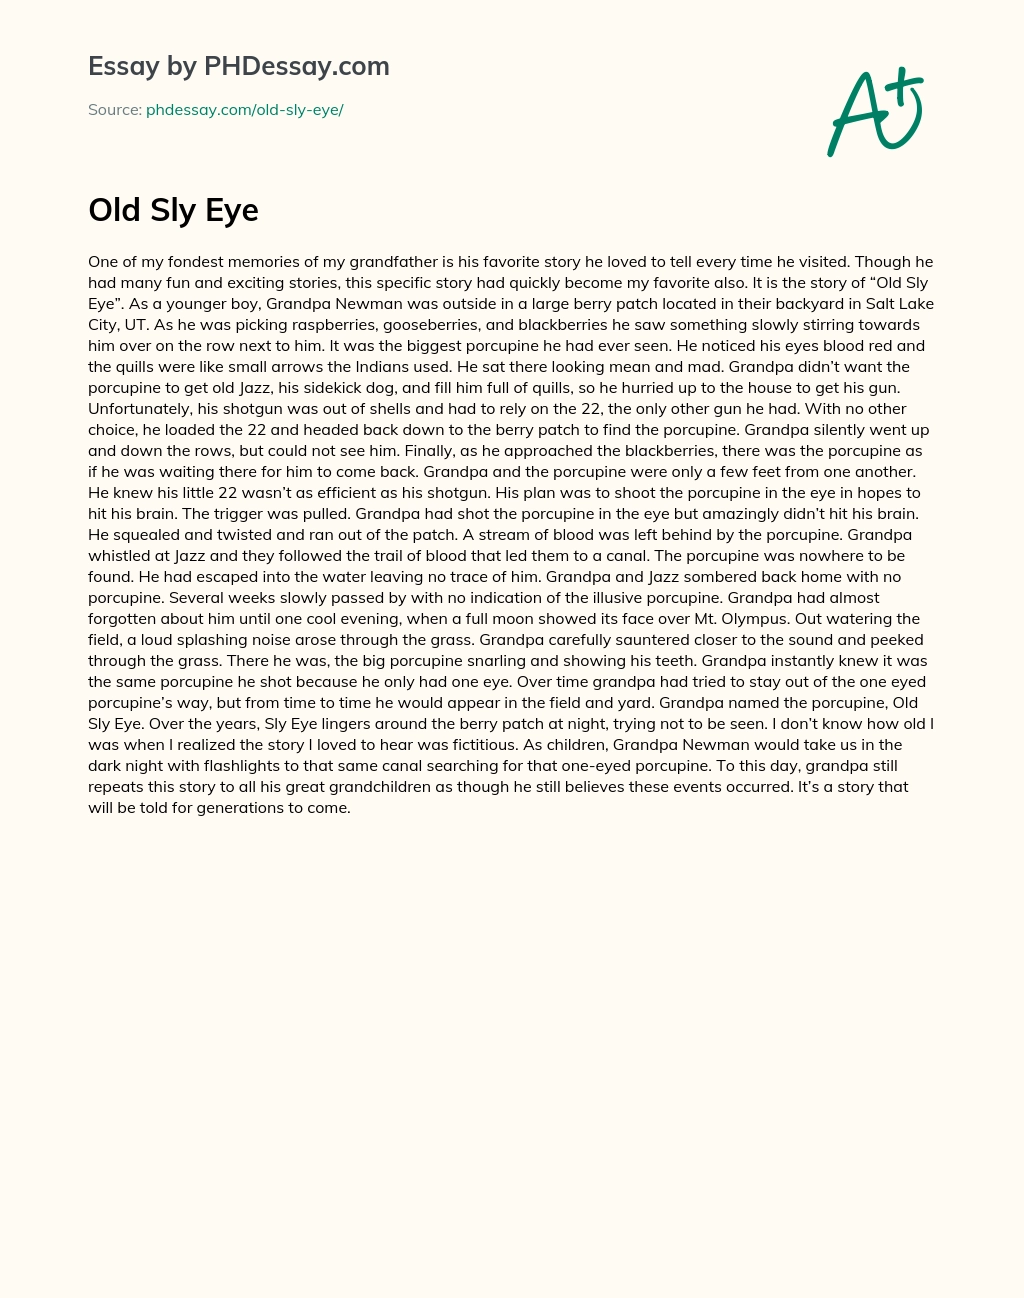 Old Sly Eye essay